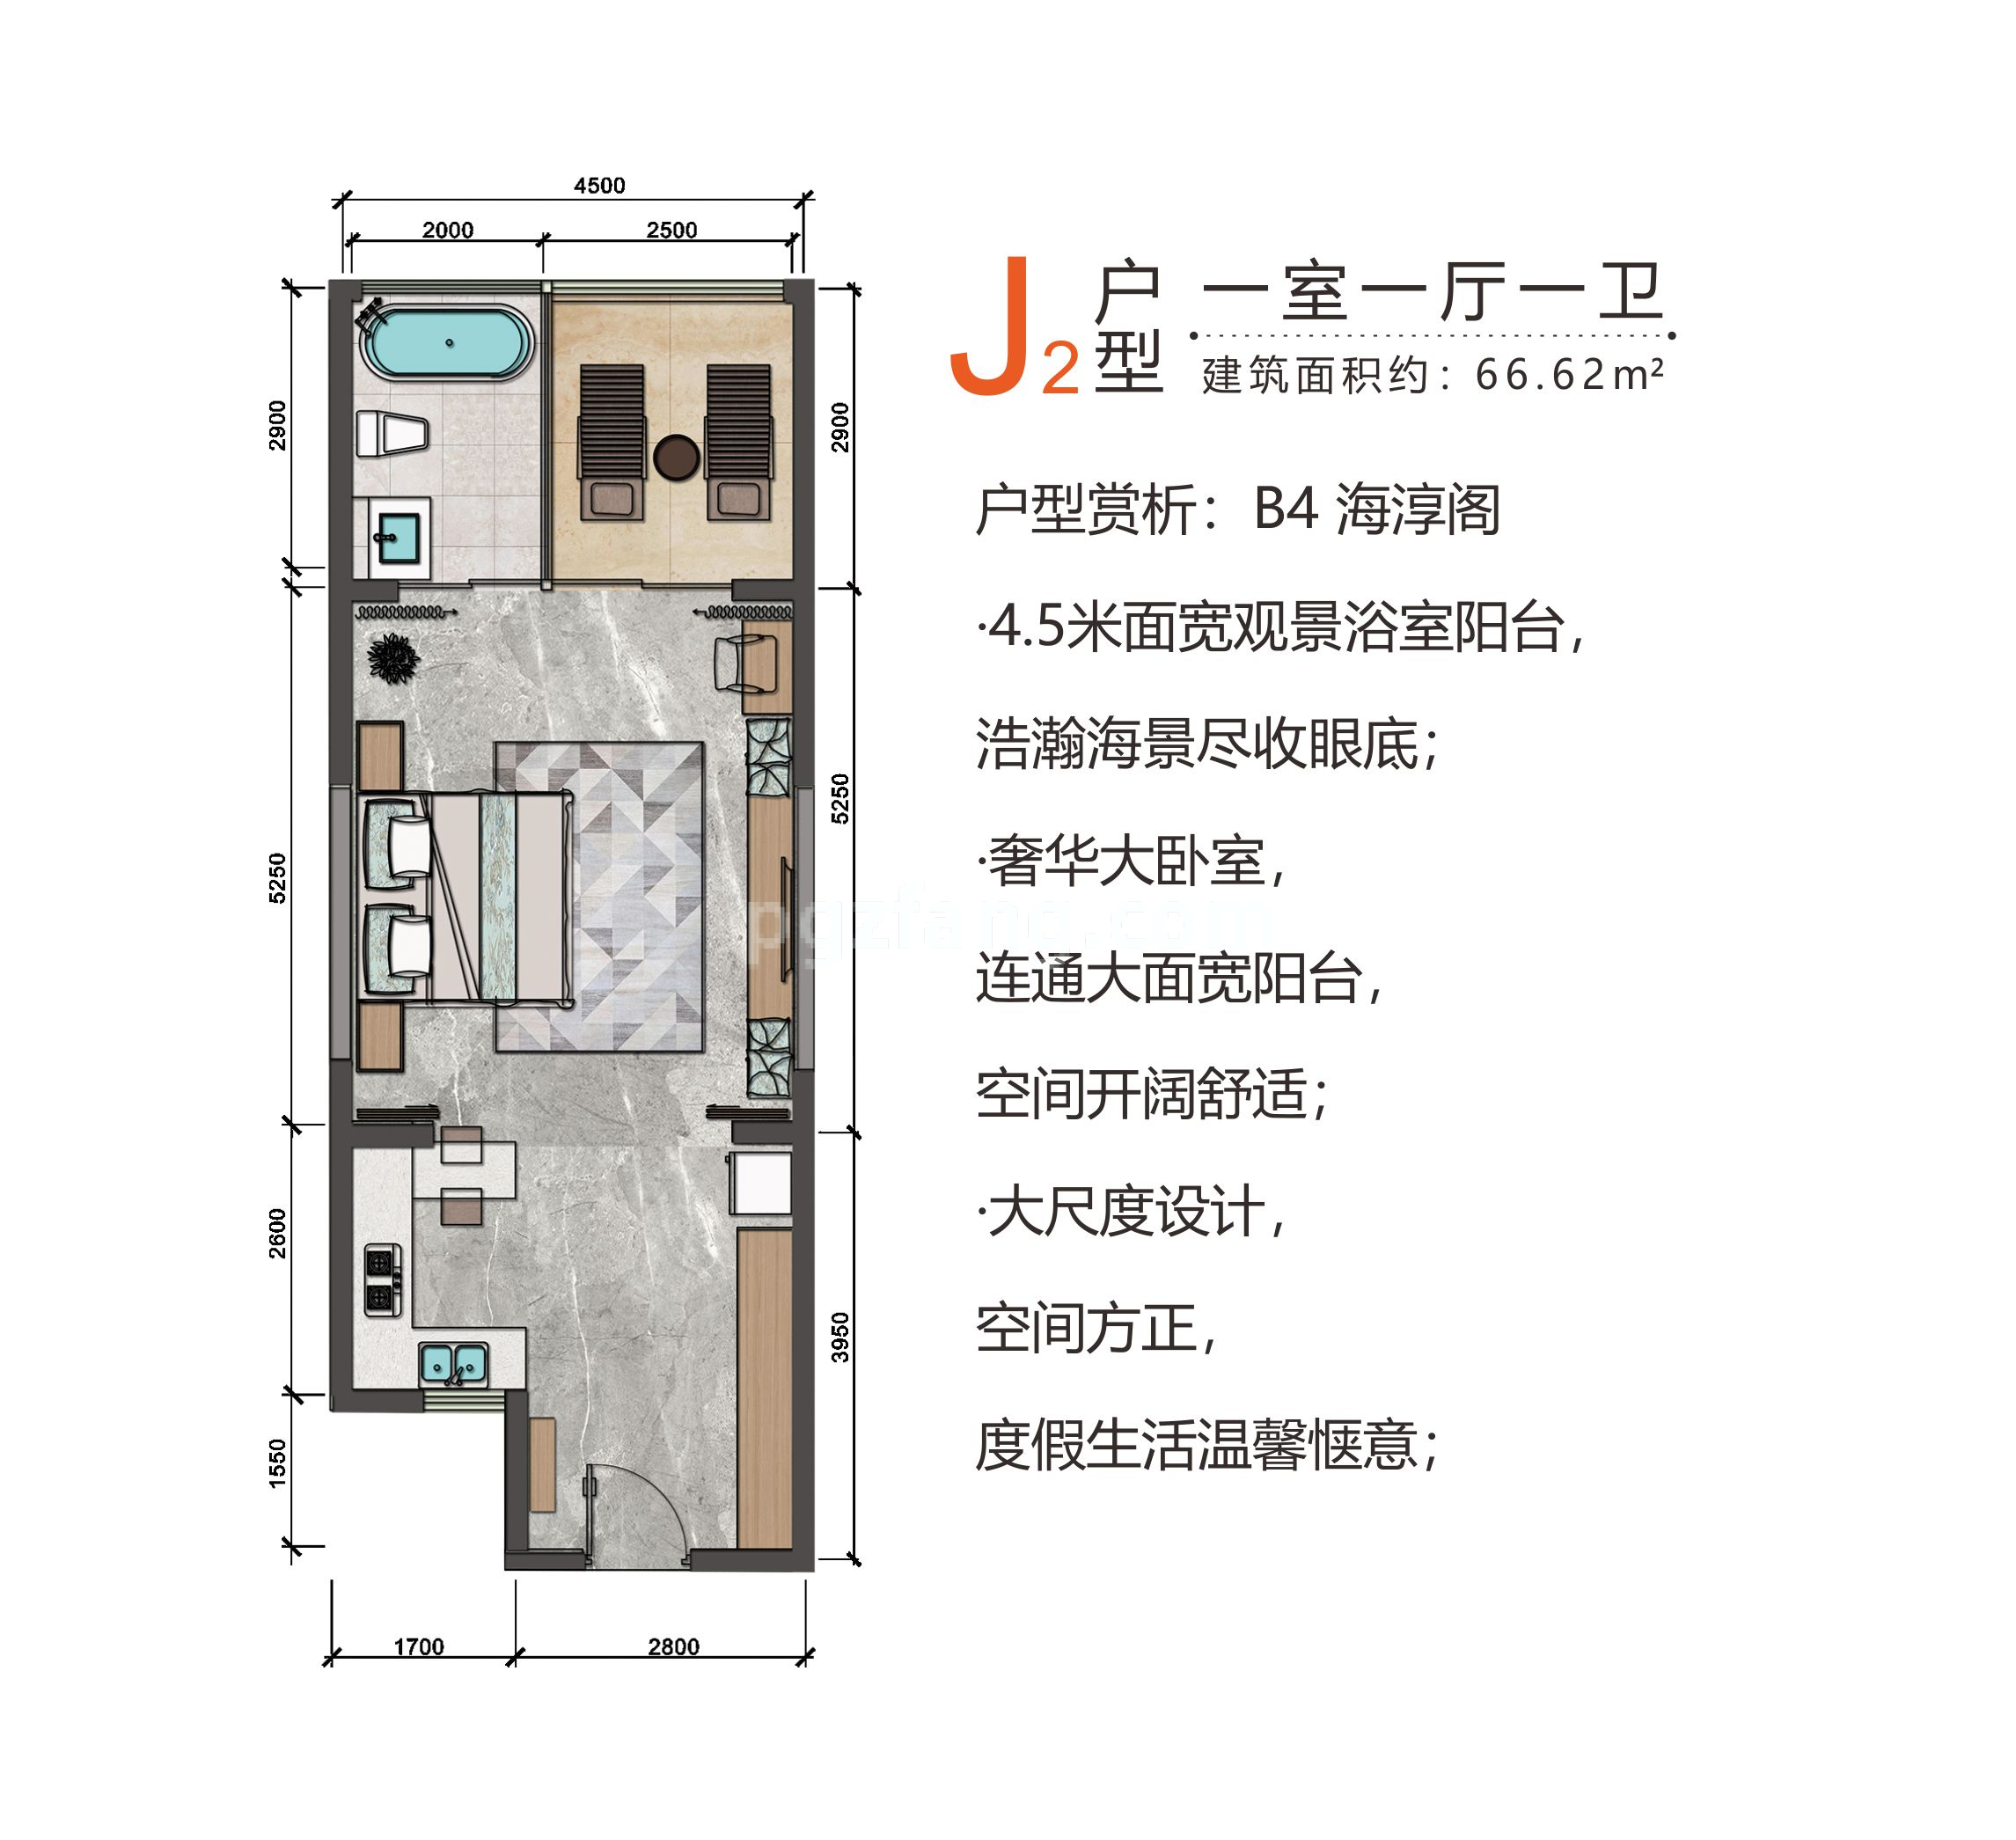 北部湾一号 高层 J2户型 一室一厅一卫 建筑面积66.62㎡